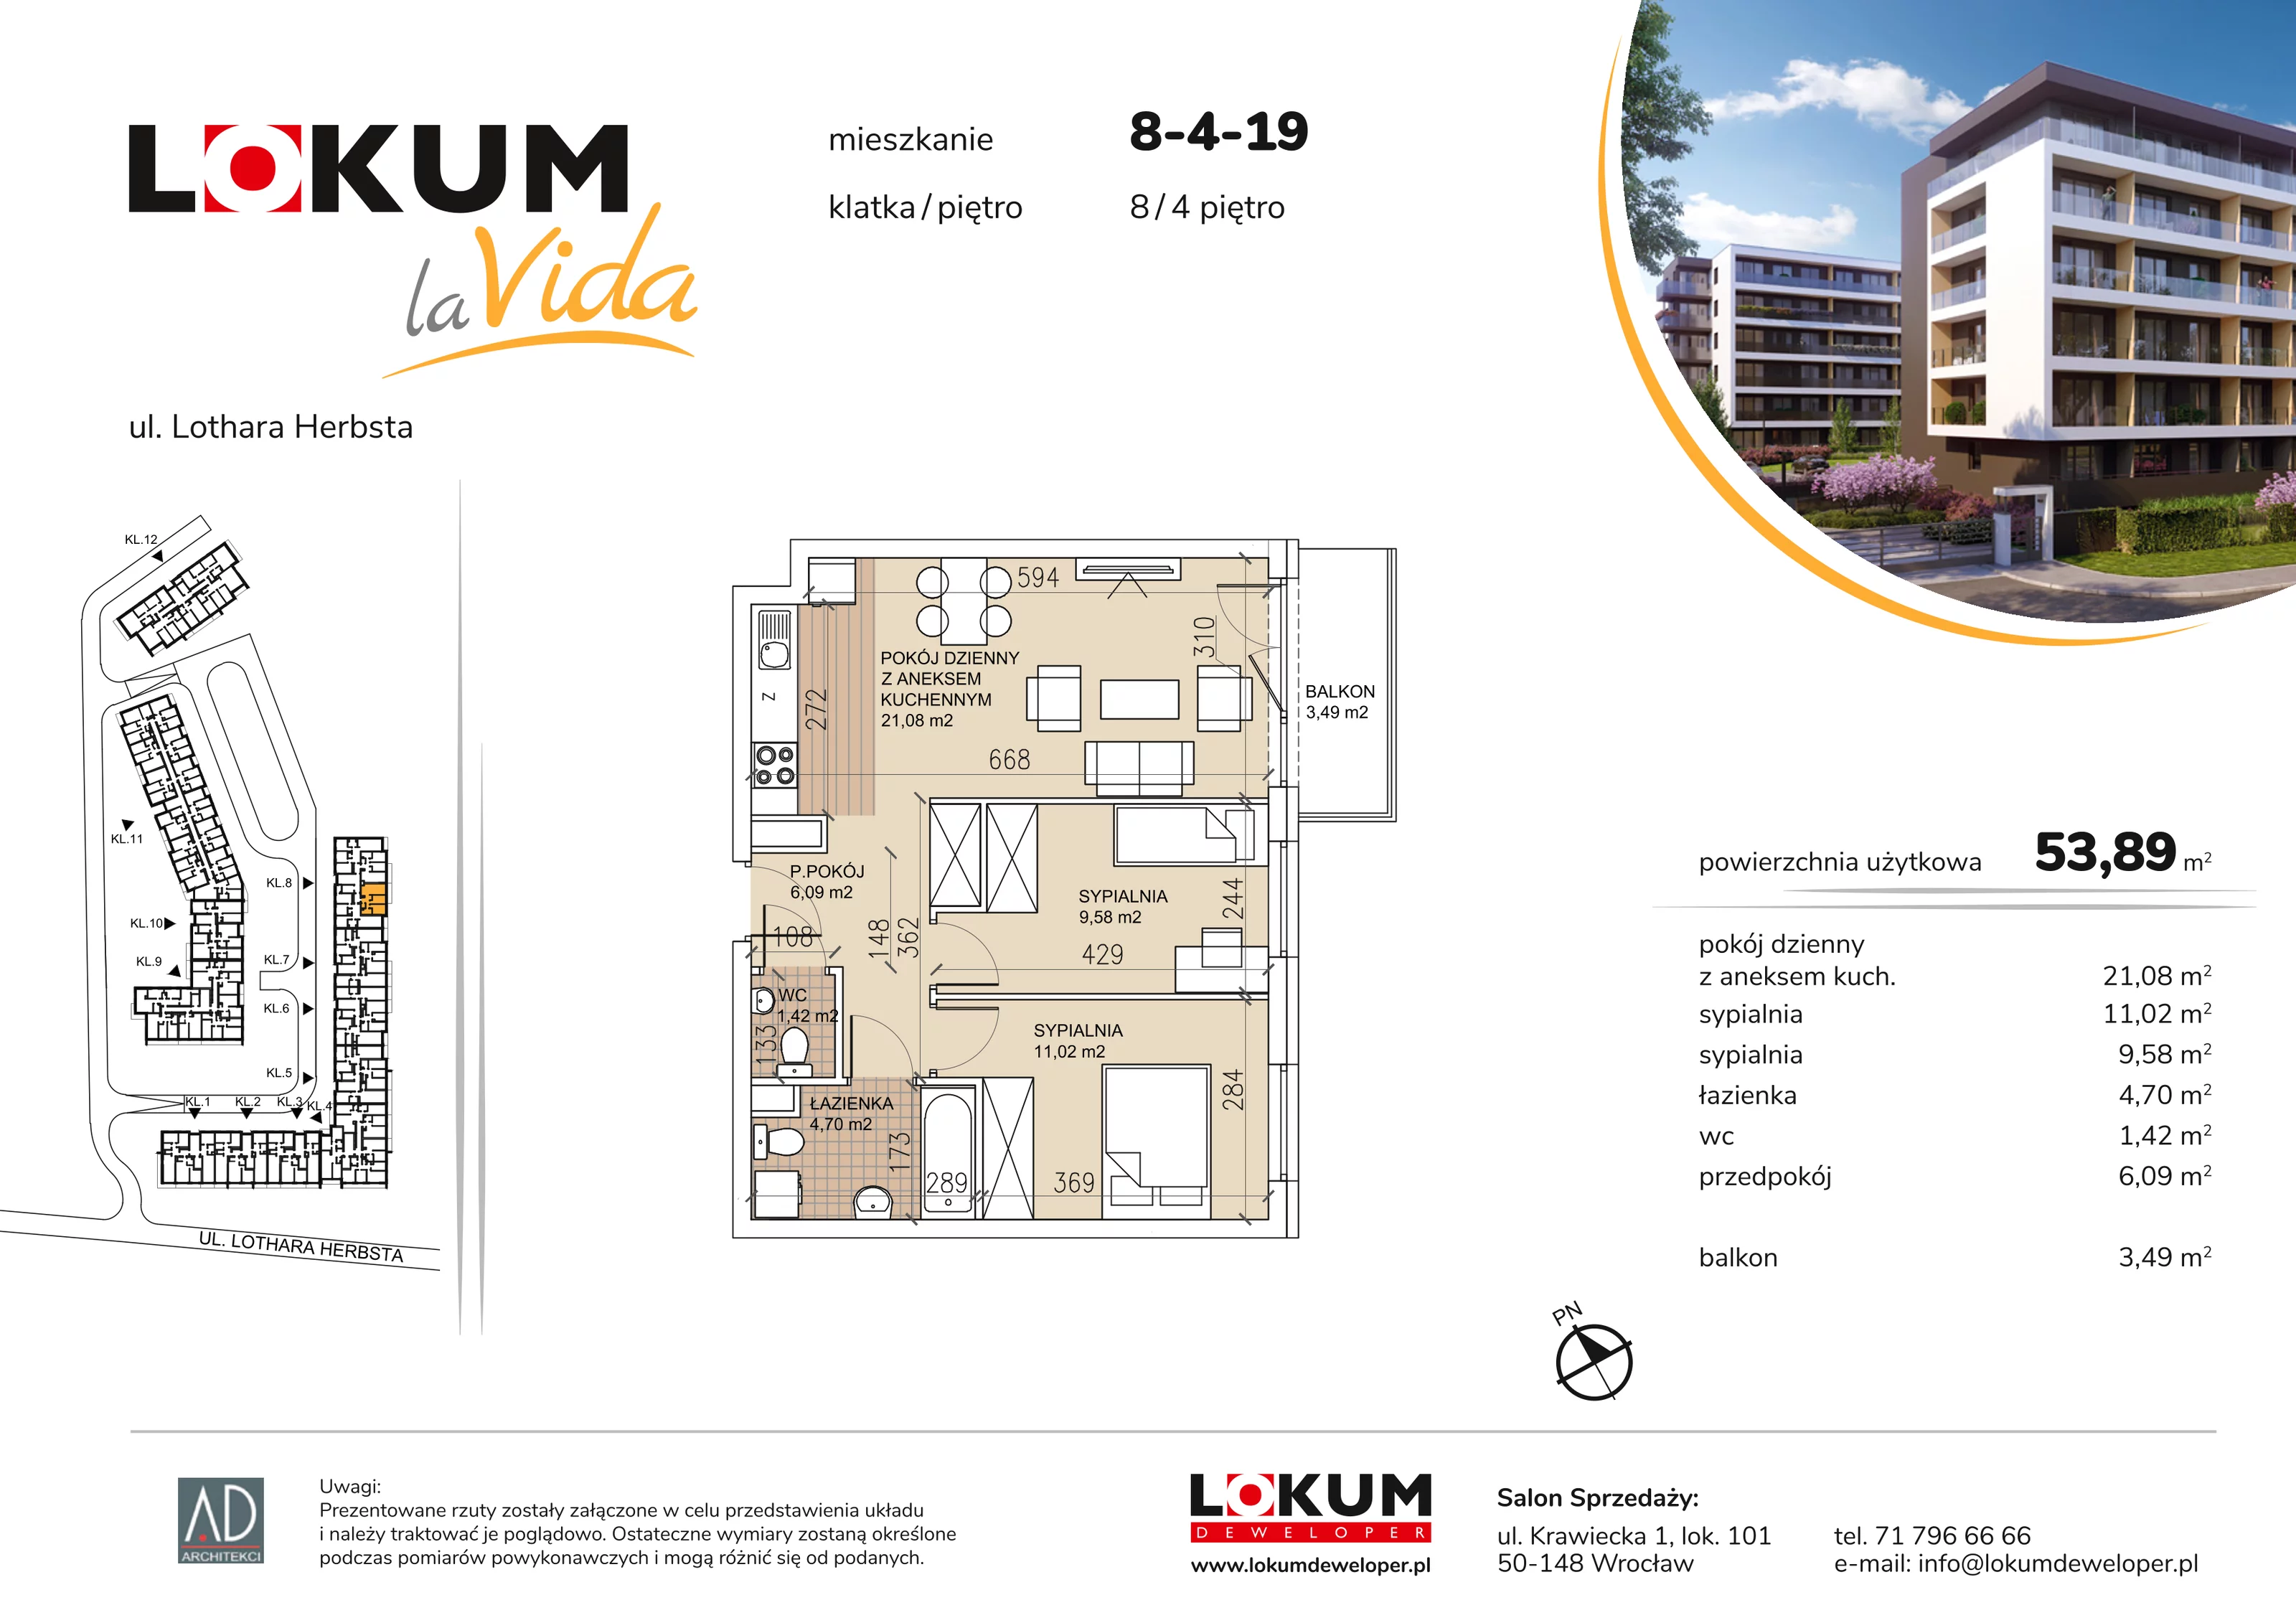 Mieszkanie 53,89 m², piętro 4, oferta nr 8-4-19, Lokum la Vida, Wrocław, Sołtysowice, ul. Lothara Herbsta